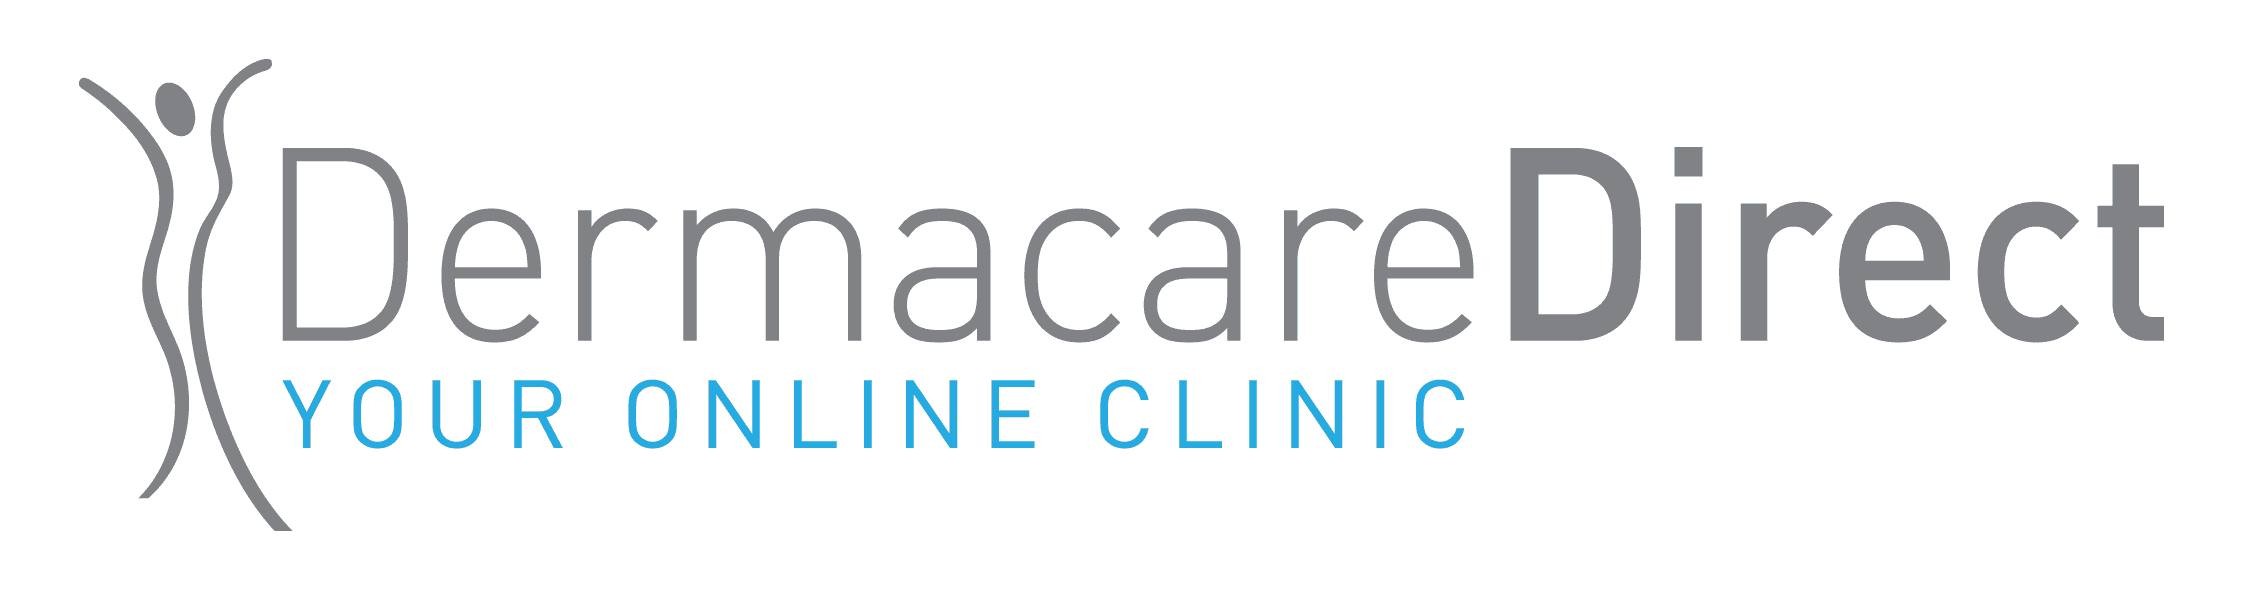 Dermacare Direct Ltd | LinkedIn